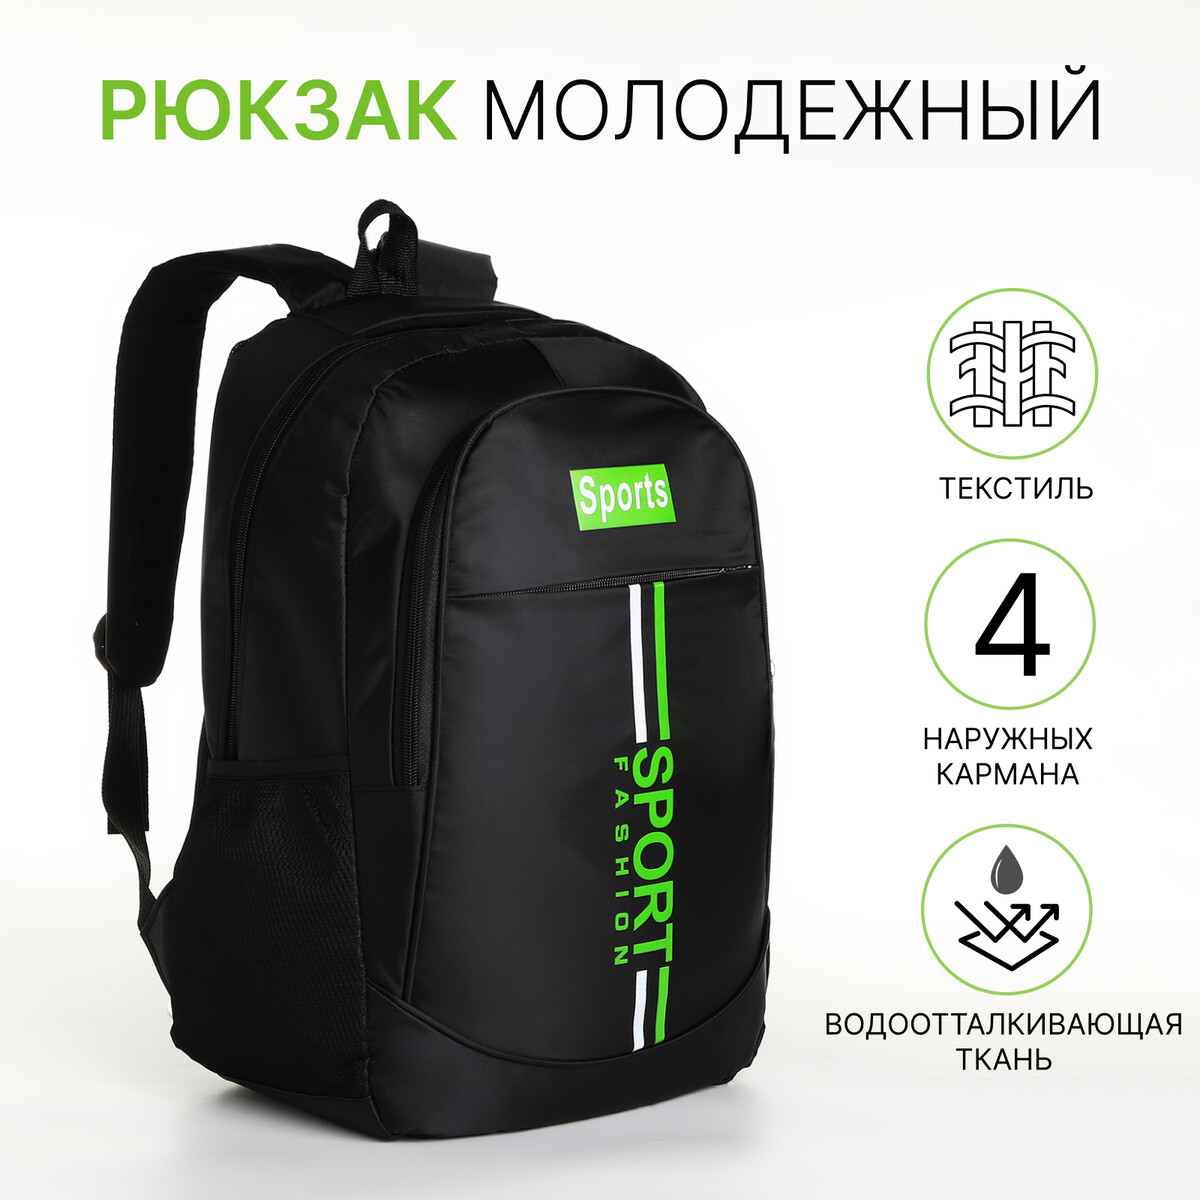 Рюкзак молодежный на молнии, 4 кармана, цвет черный/зеленый рюкзак молодежный водонепроницаемый на молнии 3 кармана зеленый